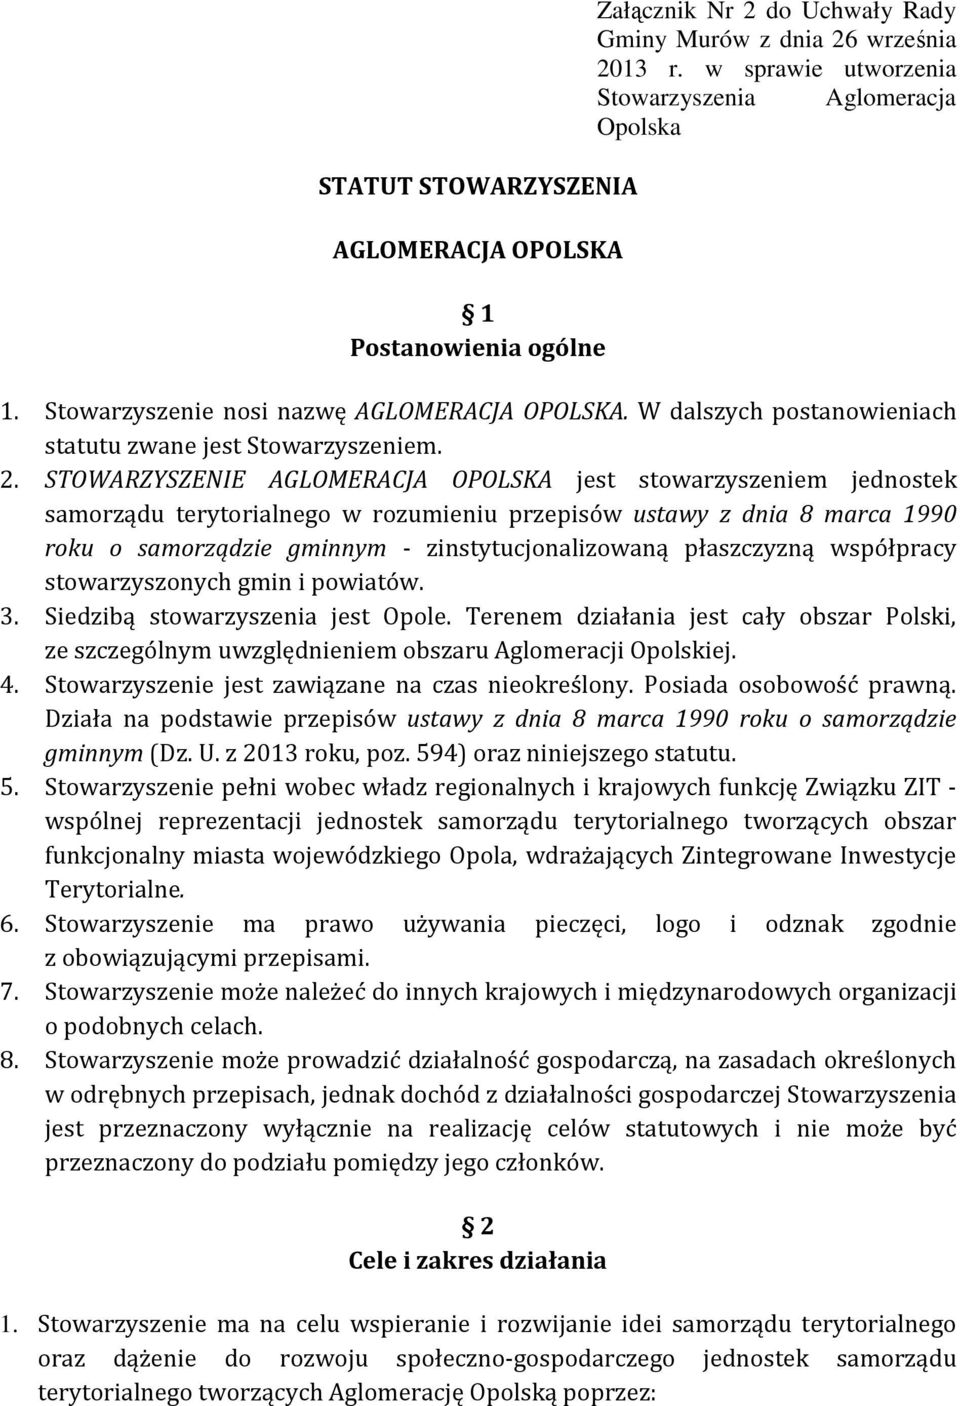 STOWARZYSZENIE AGLOMERACJA OPOLSKA jest stowarzyszeniem jednostek samorządu terytorialnego w rozumieniu przepisów ustawy z dnia 8 marca 1990 roku o samorządzie gminnym - zinstytucjonalizowaną